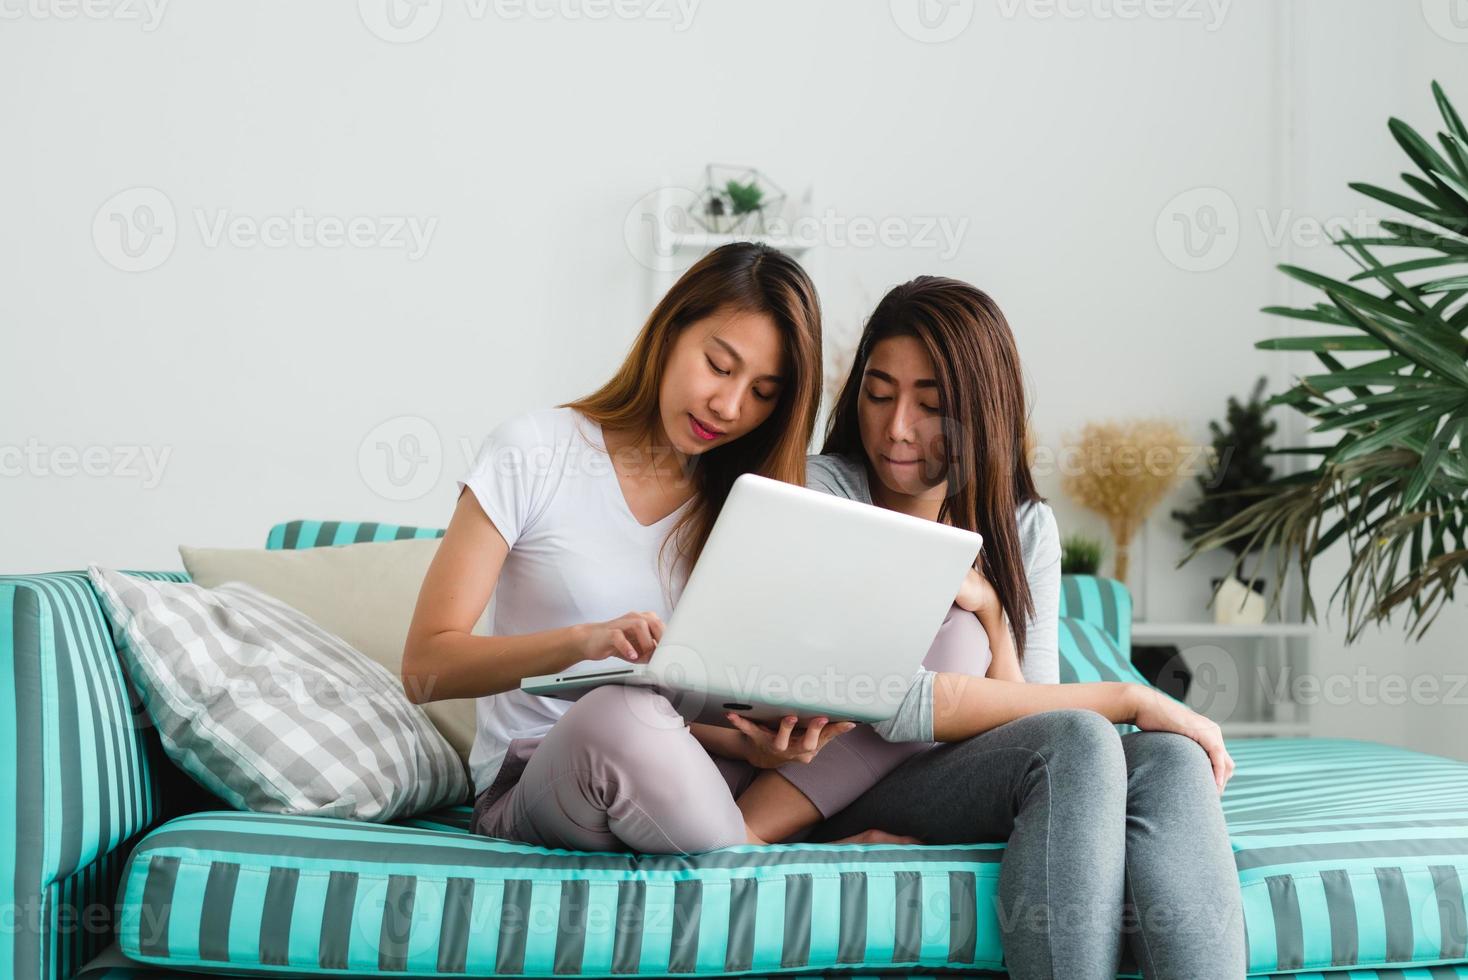 belle giovani donne asiatiche lgbt lesbica coppia felice seduta sul divano acquisto online utilizzando il computer portatile nel soggiorno di casa. lgbt coppia lesbica insieme al chiuso concetto. passare del tempo piacevole a casa. foto